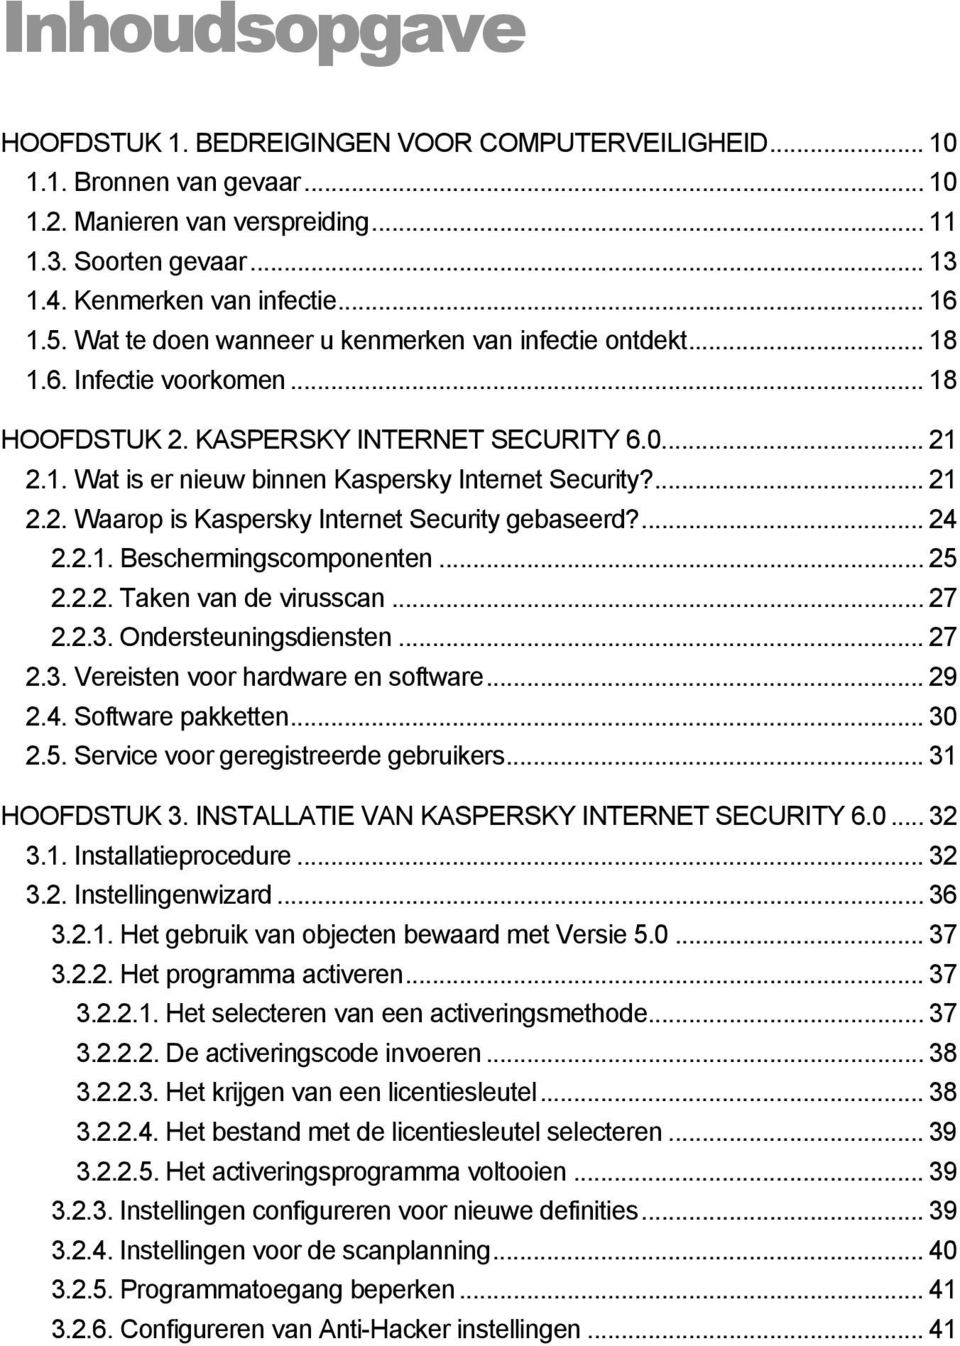 ... 21 2.2. Waarop is Kaspersky Internet Security gebaseerd?... 24 2.2.1. Beschermingscomponenten... 25 2.2.2. Taken van de virusscan... 27 2.2.3. Ondersteuningsdiensten... 27 2.3. Vereisten voor hardware en software.